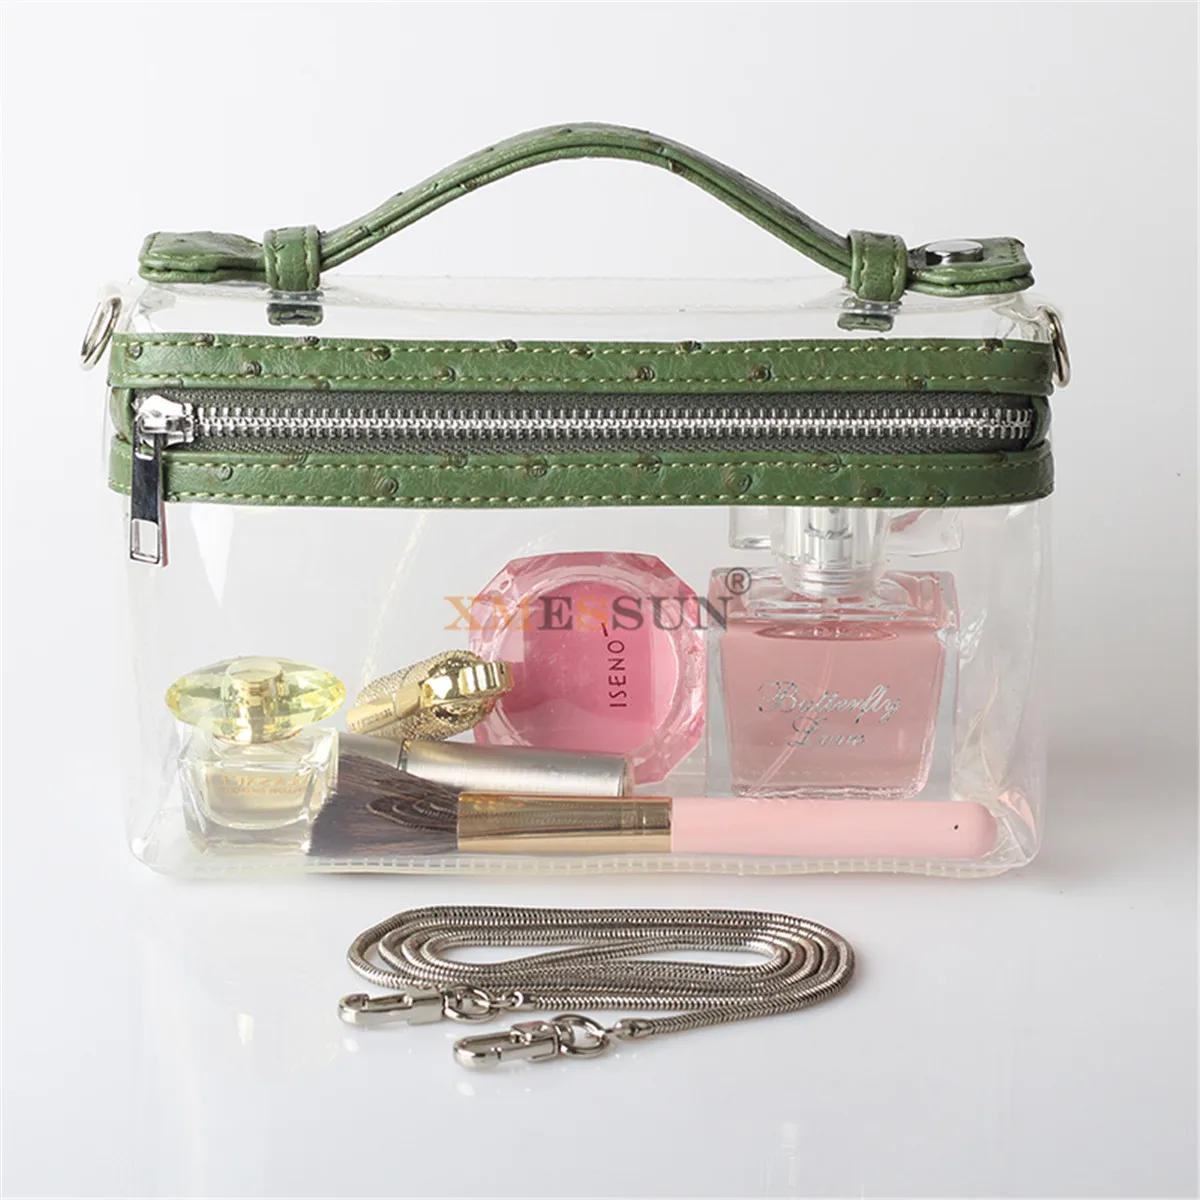 XMESSUN прозрачная сумка на цепочке, прозрачная сумка через плечо, женская модная вечерняя сумочка, роскошные дизайнерские сумки, модная сумка - Цвет: Ostrich Green(5)